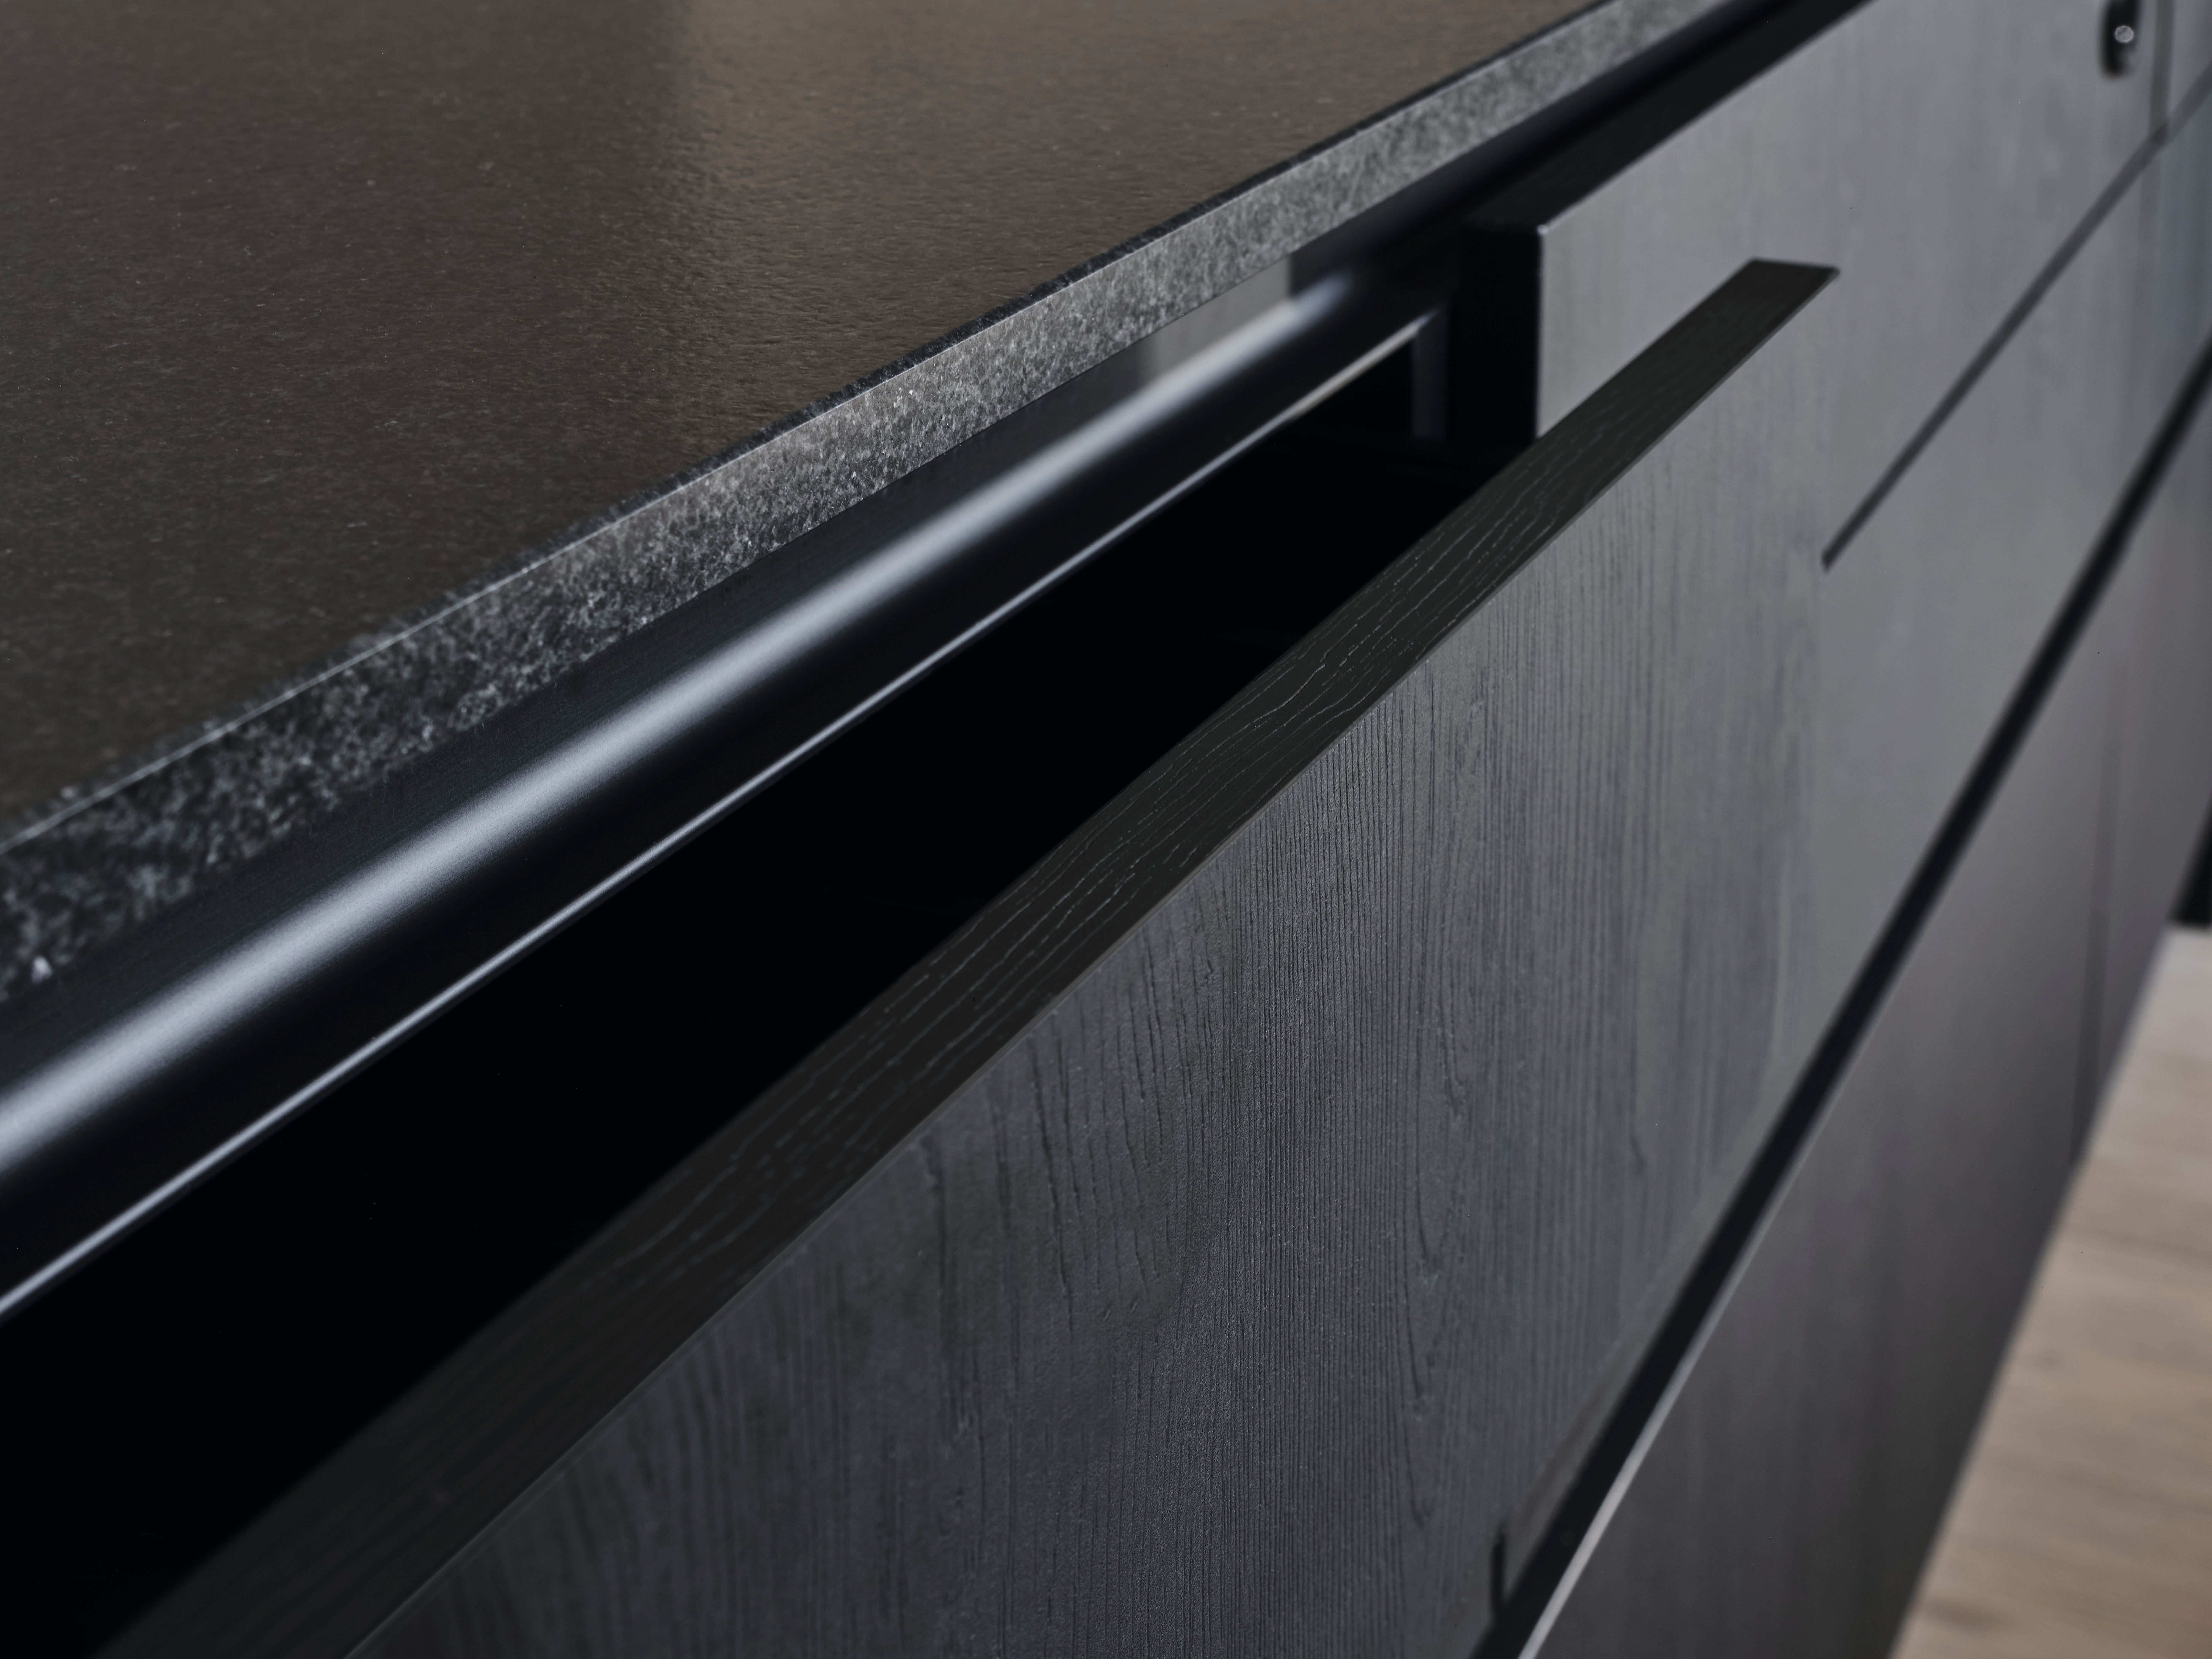 Особлива властивість стійкості до появи відбитків пальців декору U999 TM28 Чорний плит PerfectSense Feelwood надають цій кухні природної елегантності.